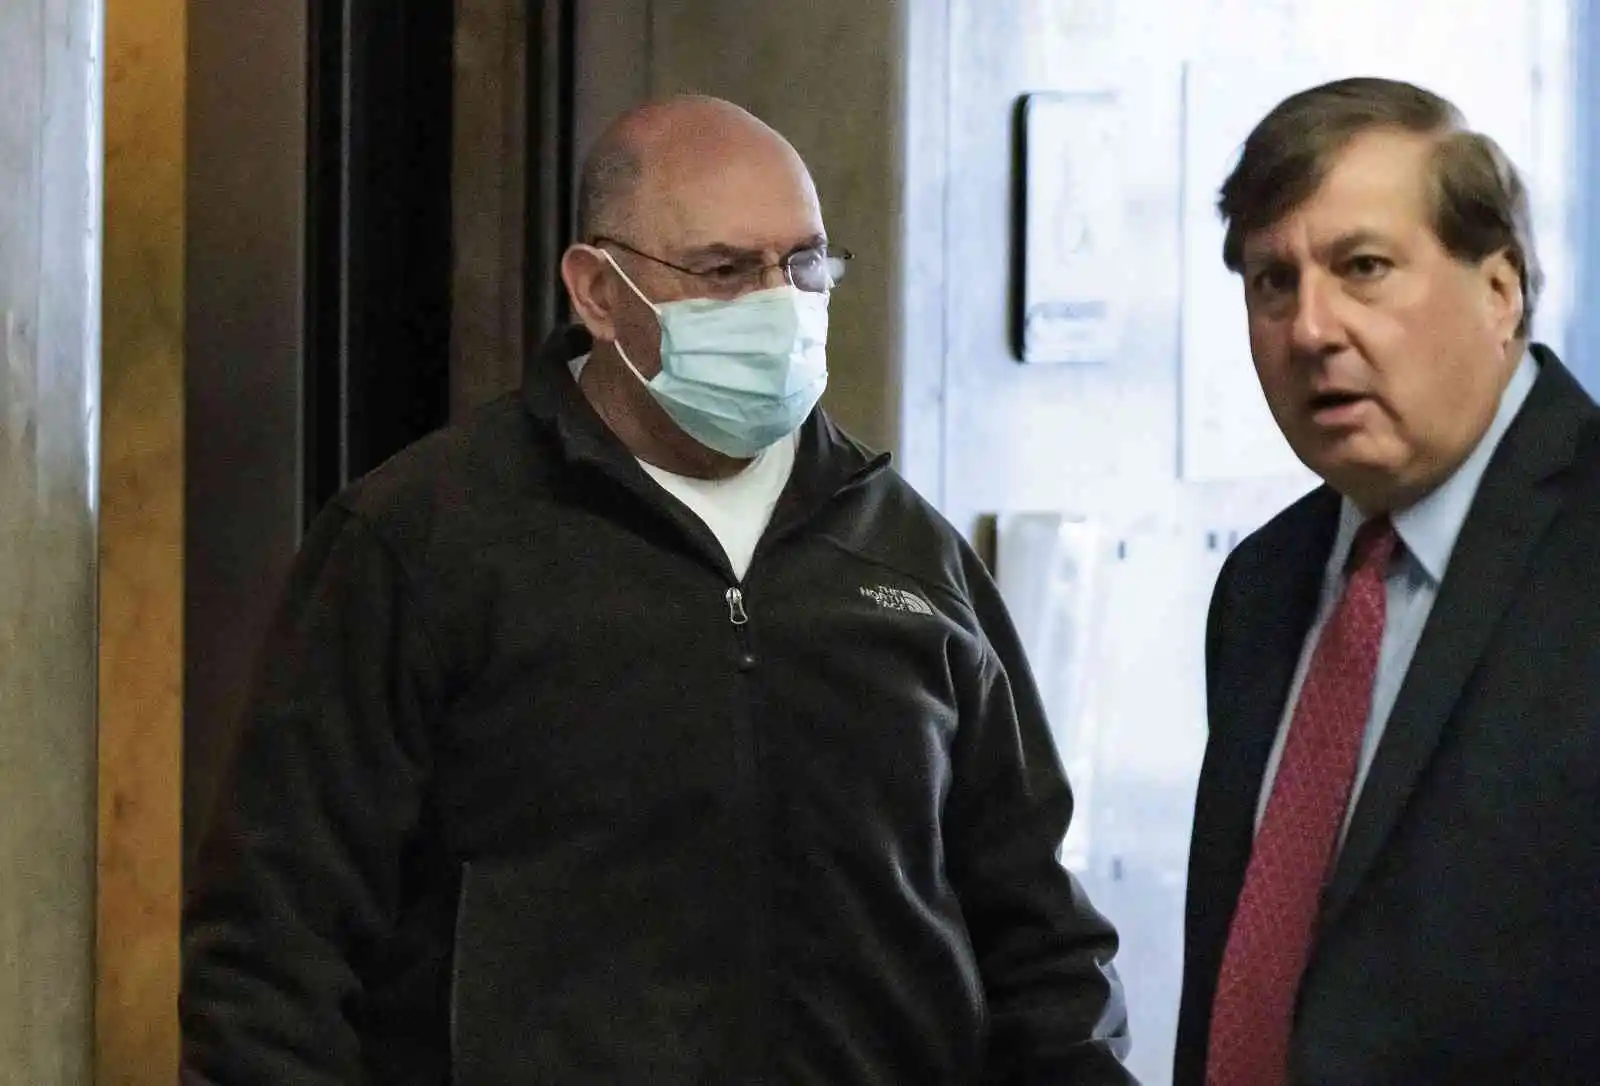 Trump Organization’ın Finans Direktörü Weisselberg 5 ay hapis cezasına çarptırıldı
